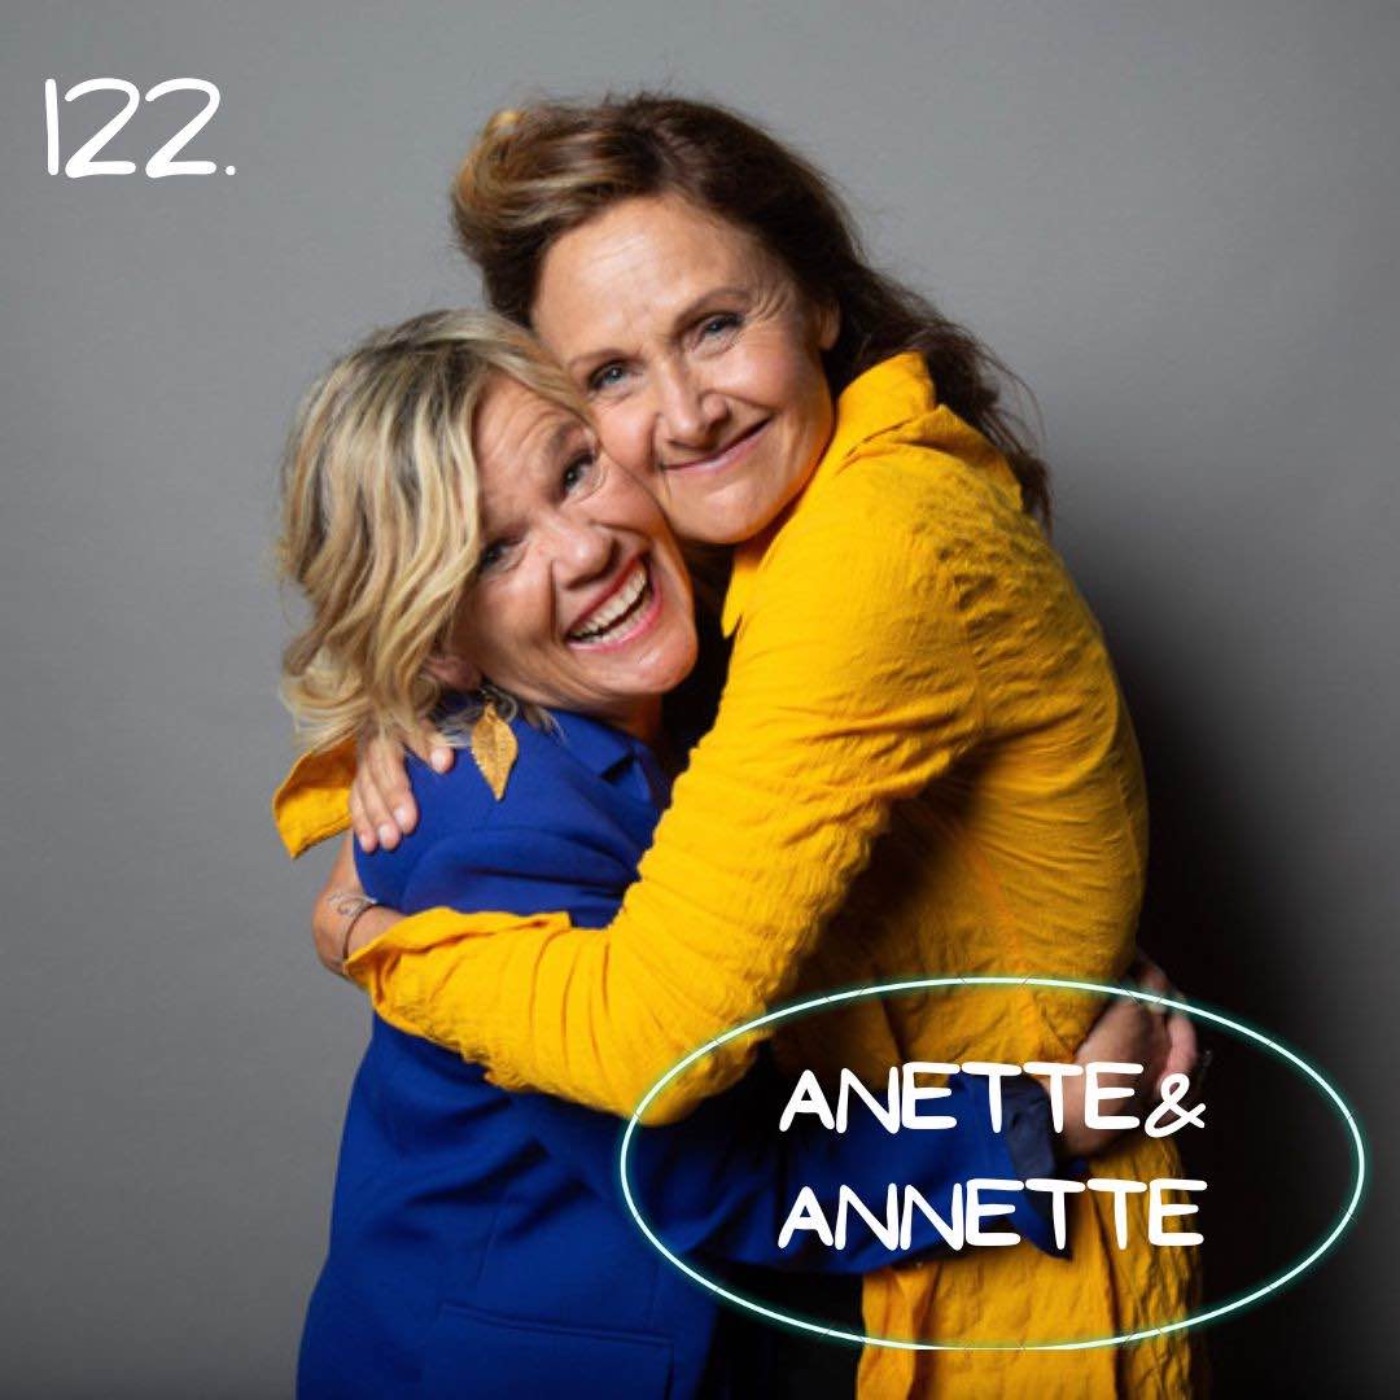 122. Anette & Annette - Vad har vi nu på gång?